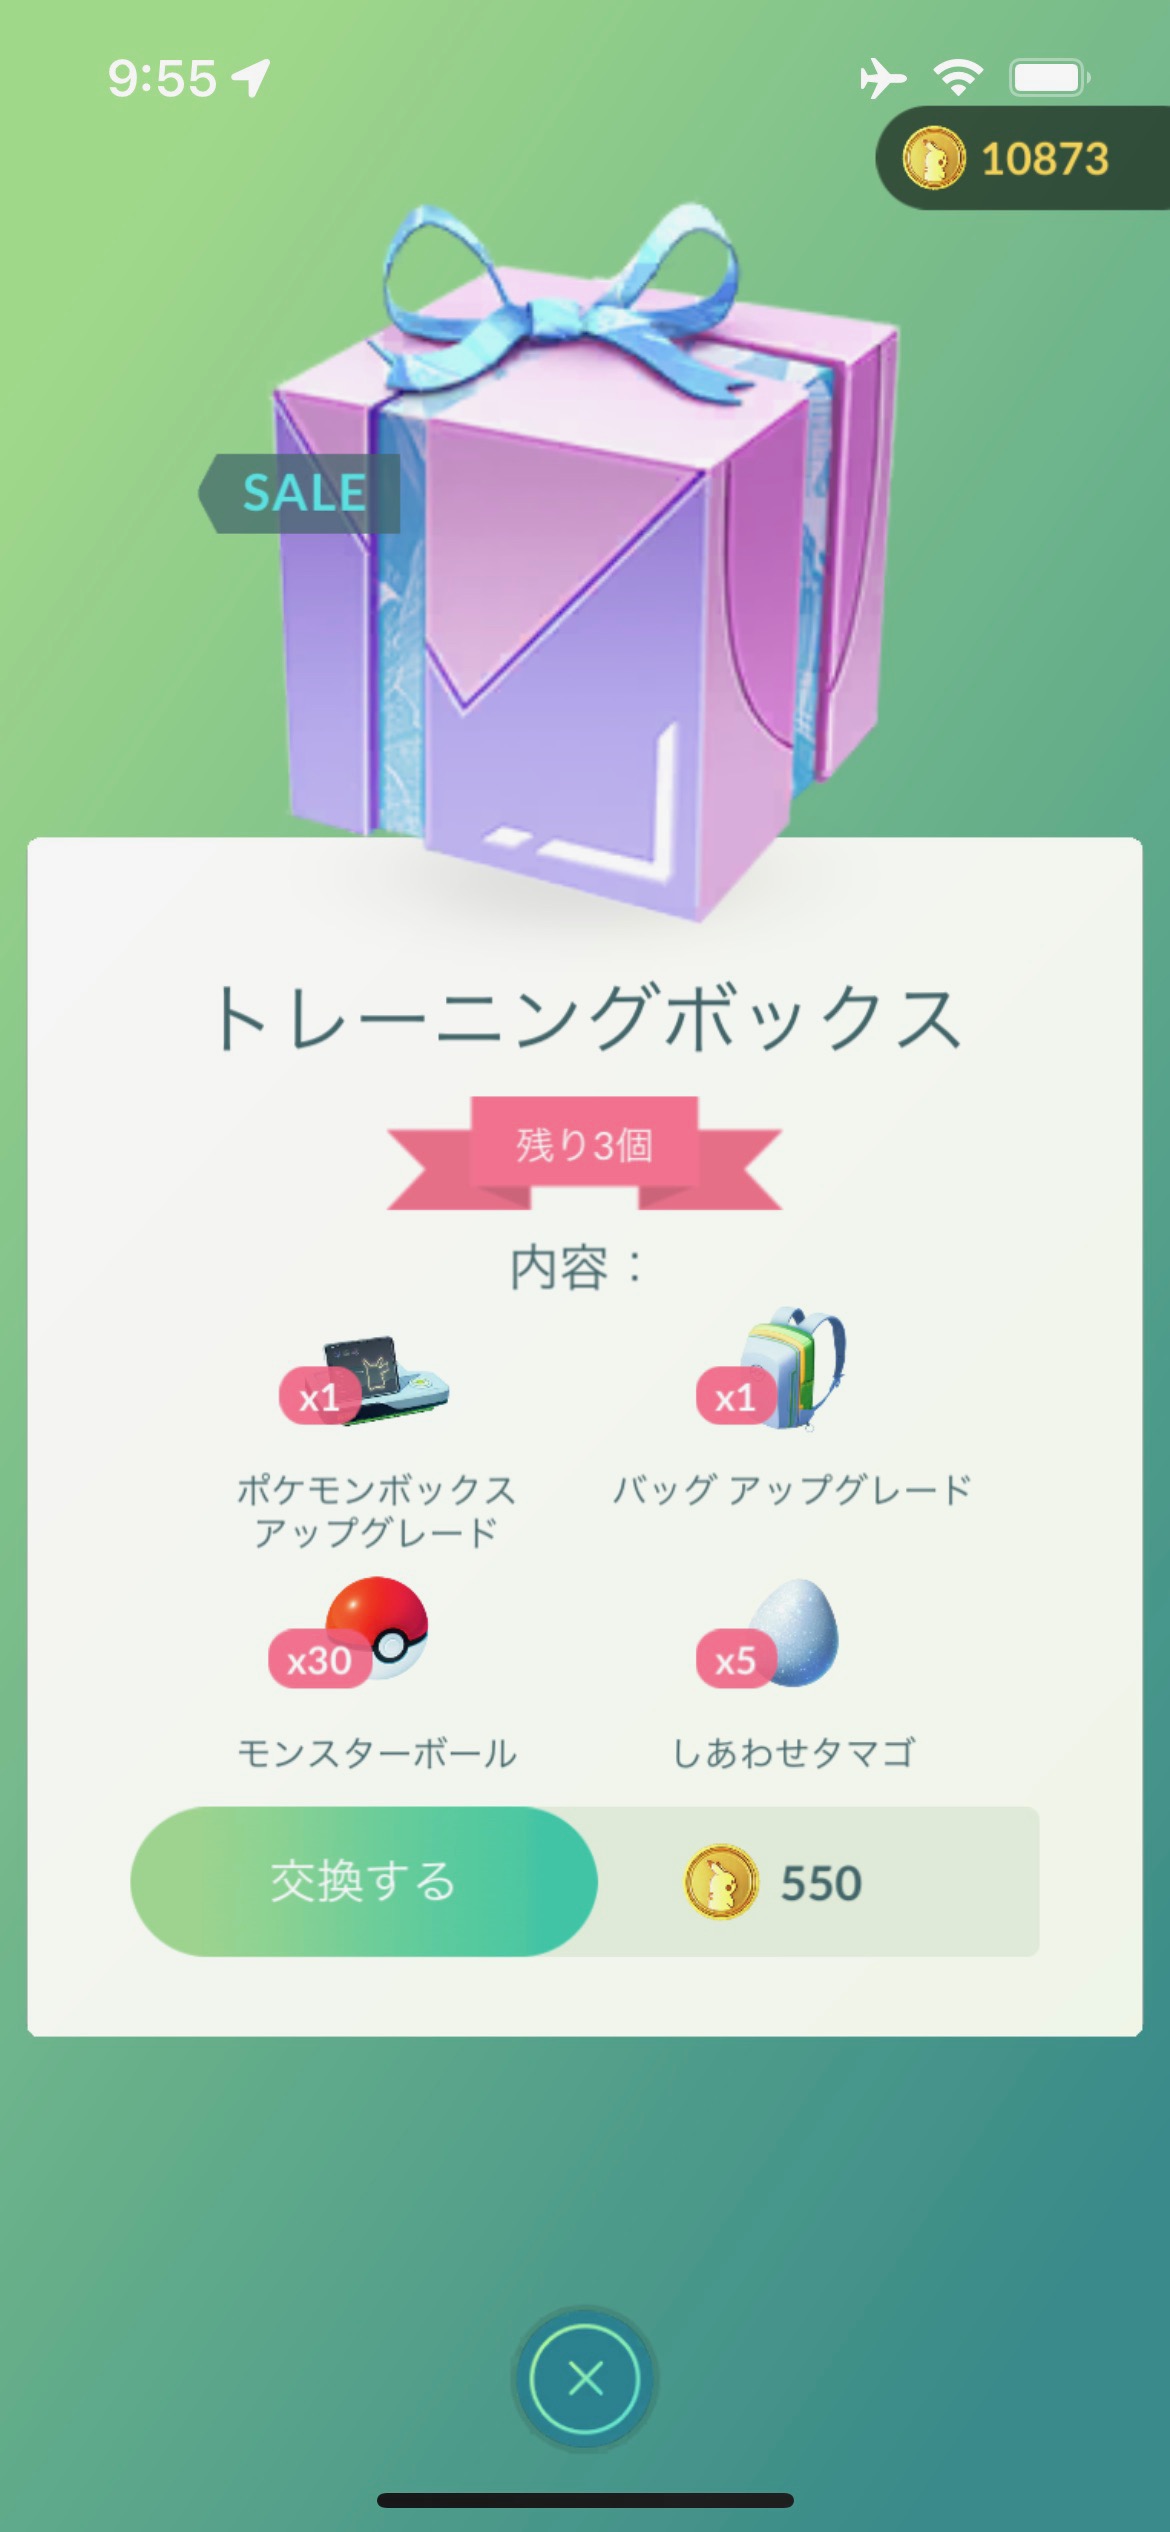 ポケモンgo ボックスとバッグの拡張上限がアップ セールボックスの内容が更新 Pokemon Go Fest 22 フィナーレ Appbank